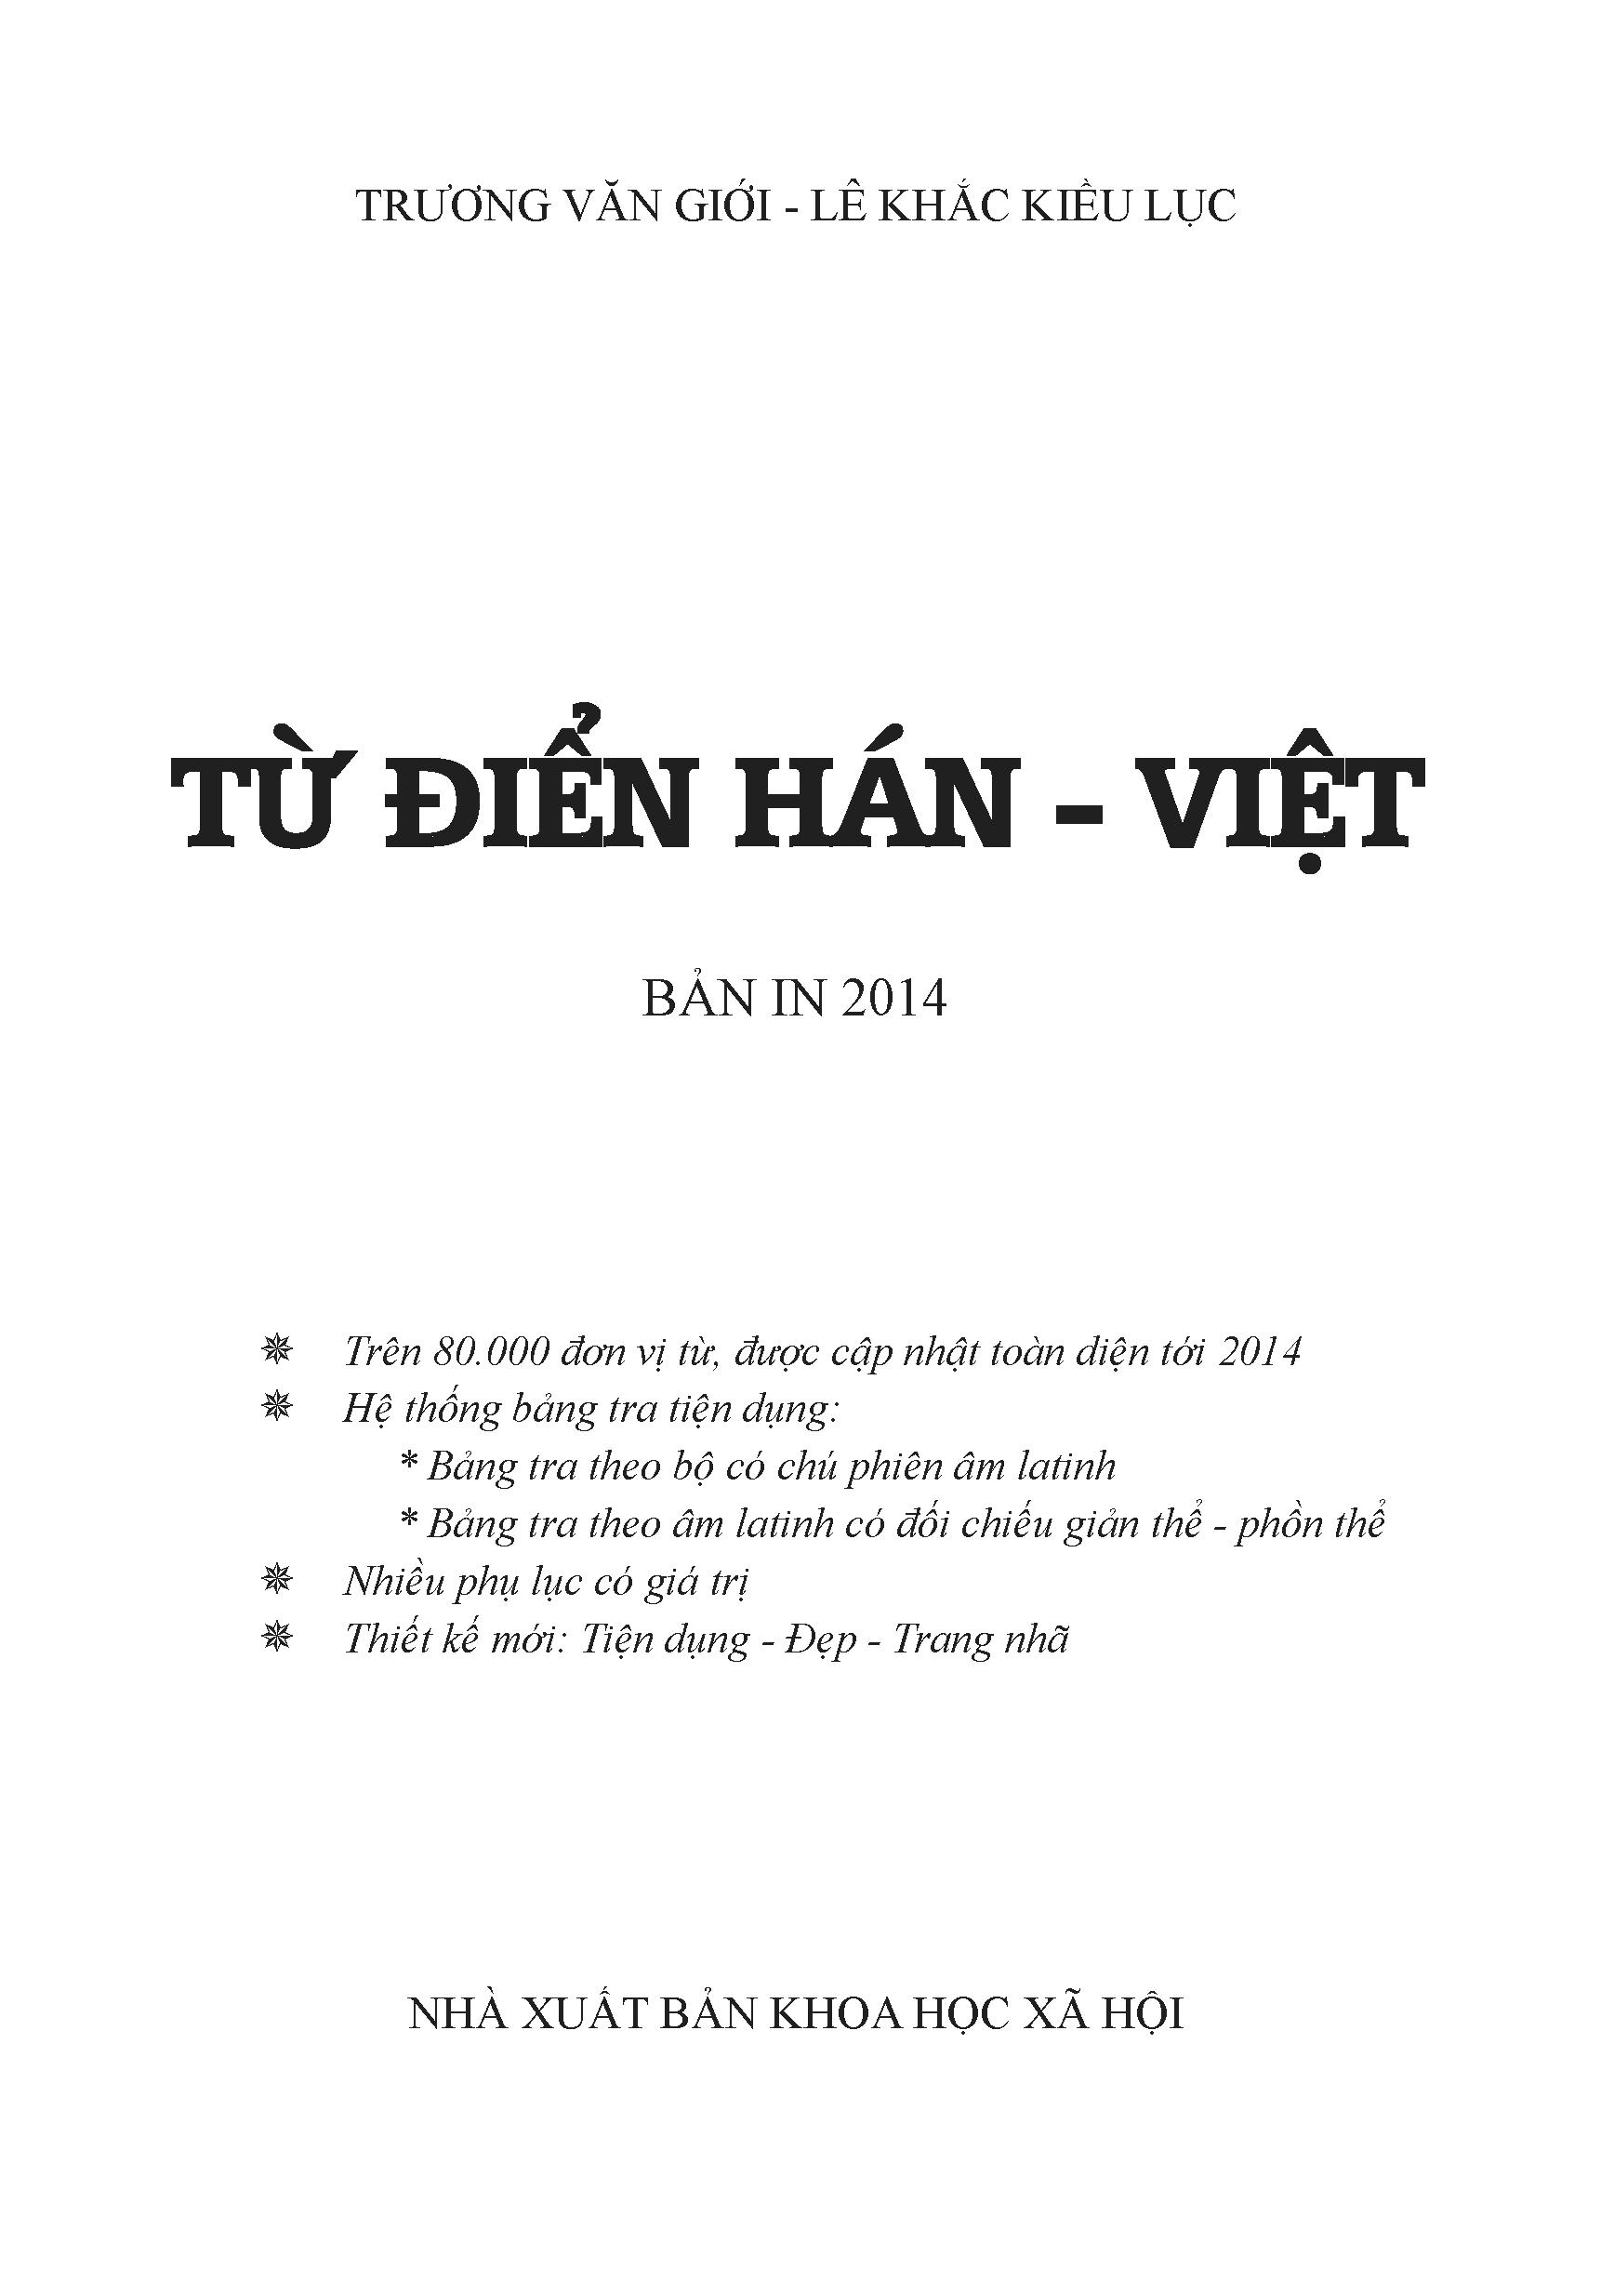 Hải Hà SG - Từ Điển Hán Việt